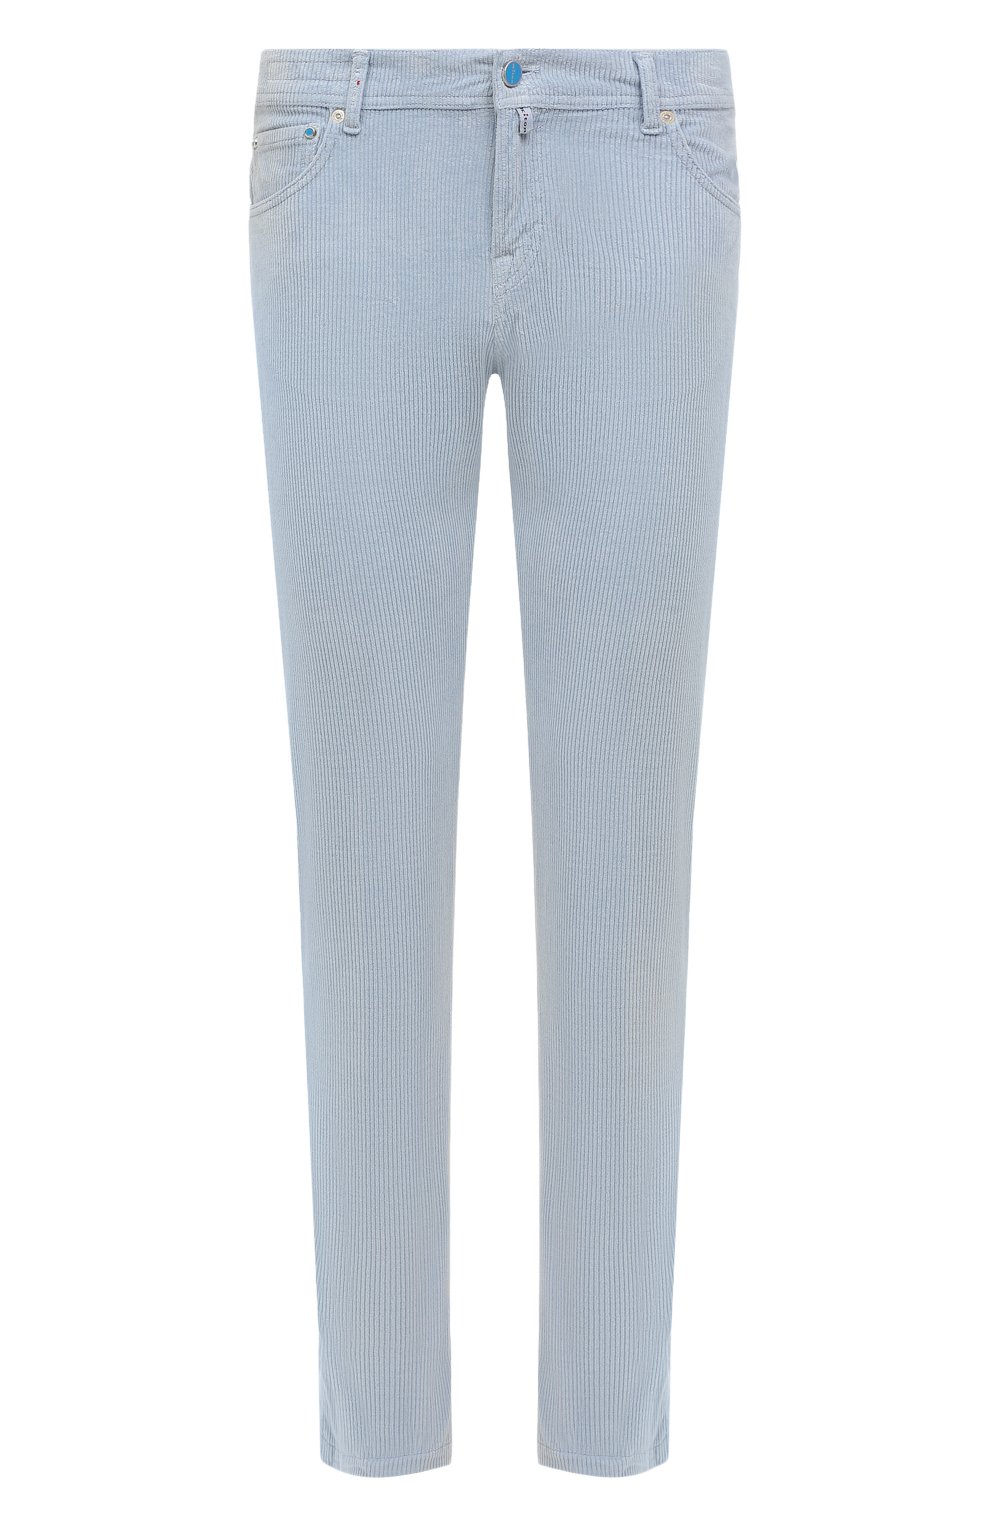 Мужские брюки из хлопка и кашемира KITON голубого цвета, арт. UPNJSJ0758A | Фото 1 (Длина (брюки, джинсы): Стандартные; Случай: Повседневный; Материал внешний: Хлопок; Стили: Кэжуэл)